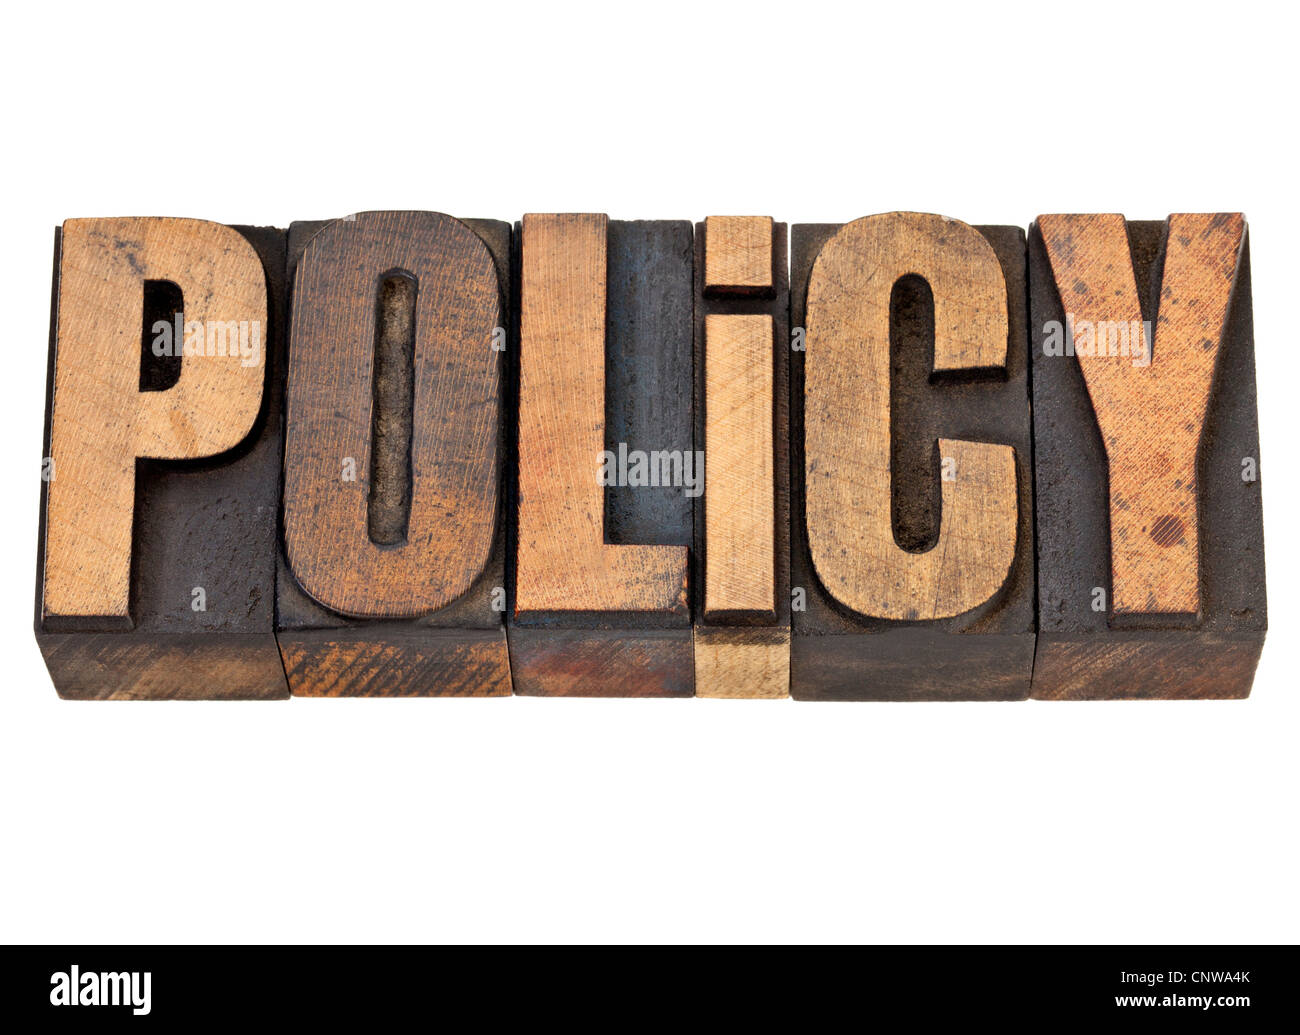 Politica - parola isolata in rilievografia vintage tipo legno Foto Stock